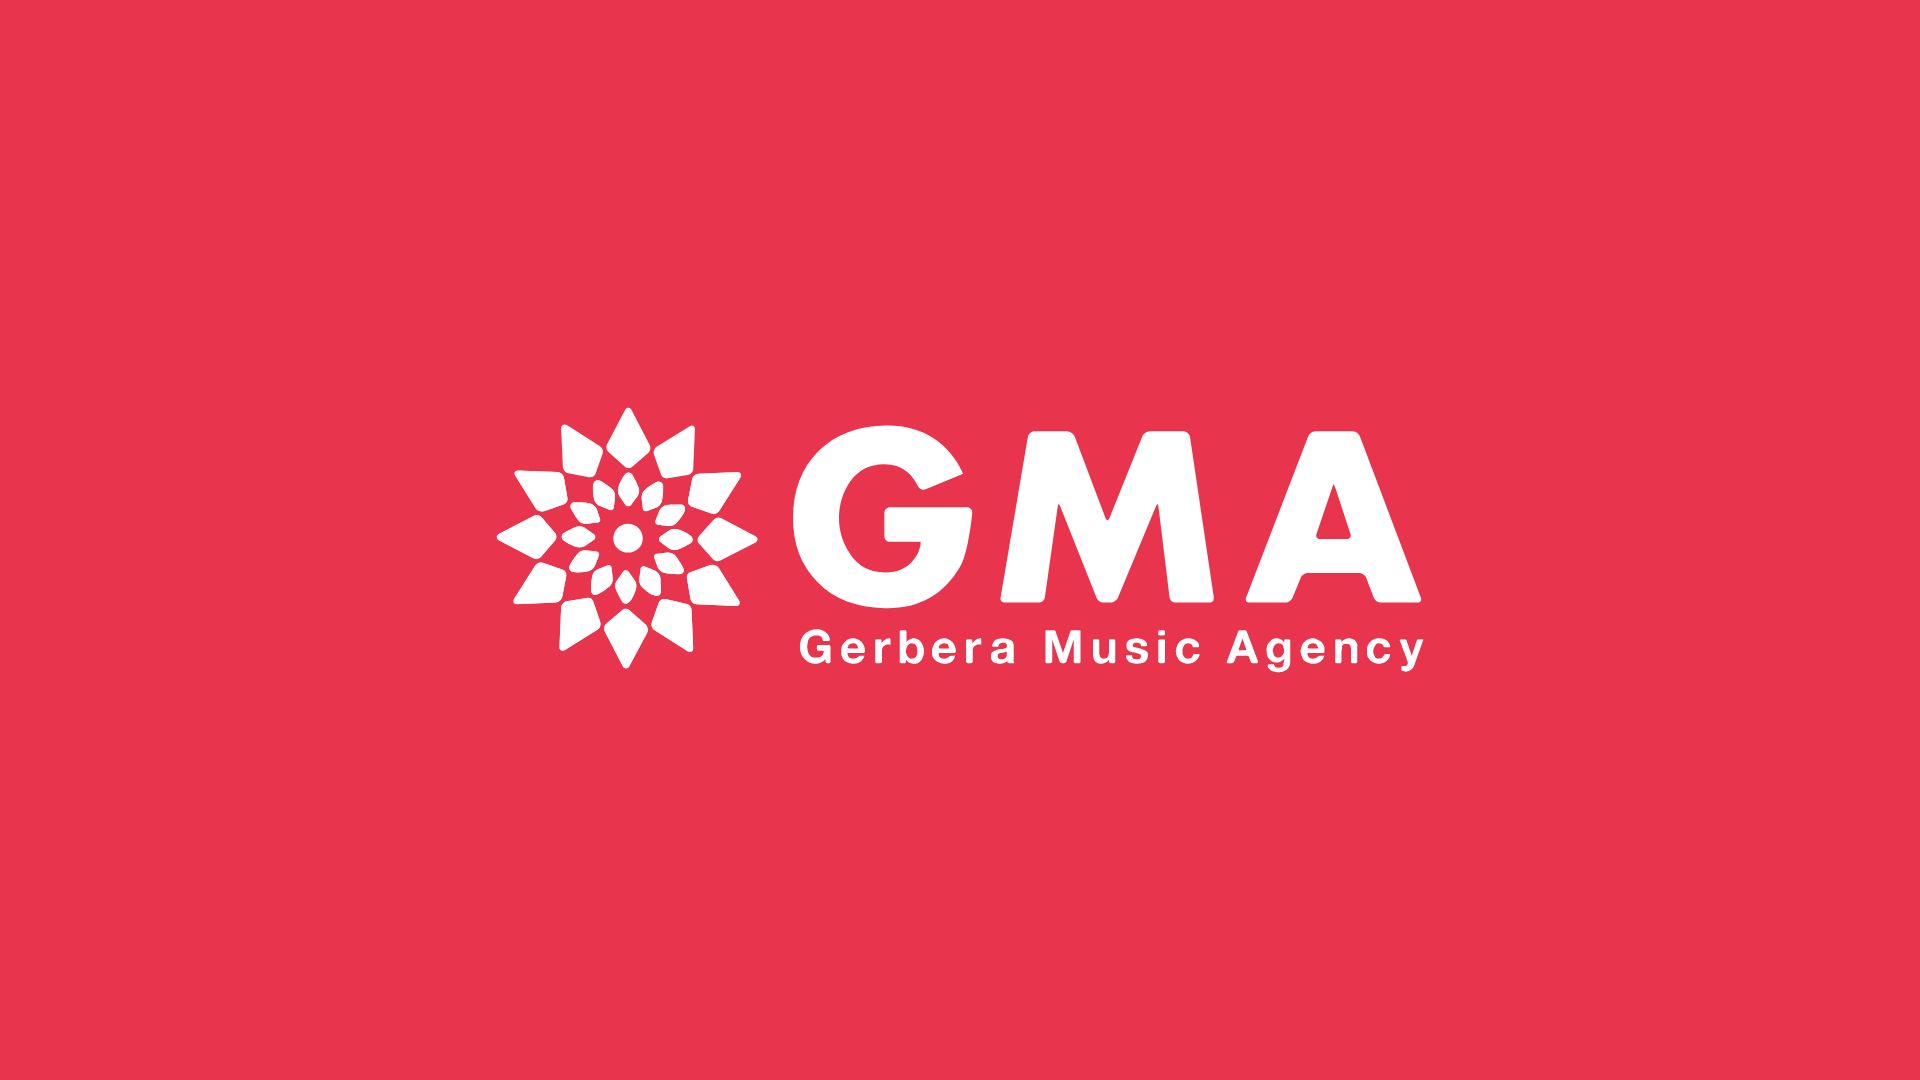 楽曲利用の許諾申請を代行 Gerbera Music Agency